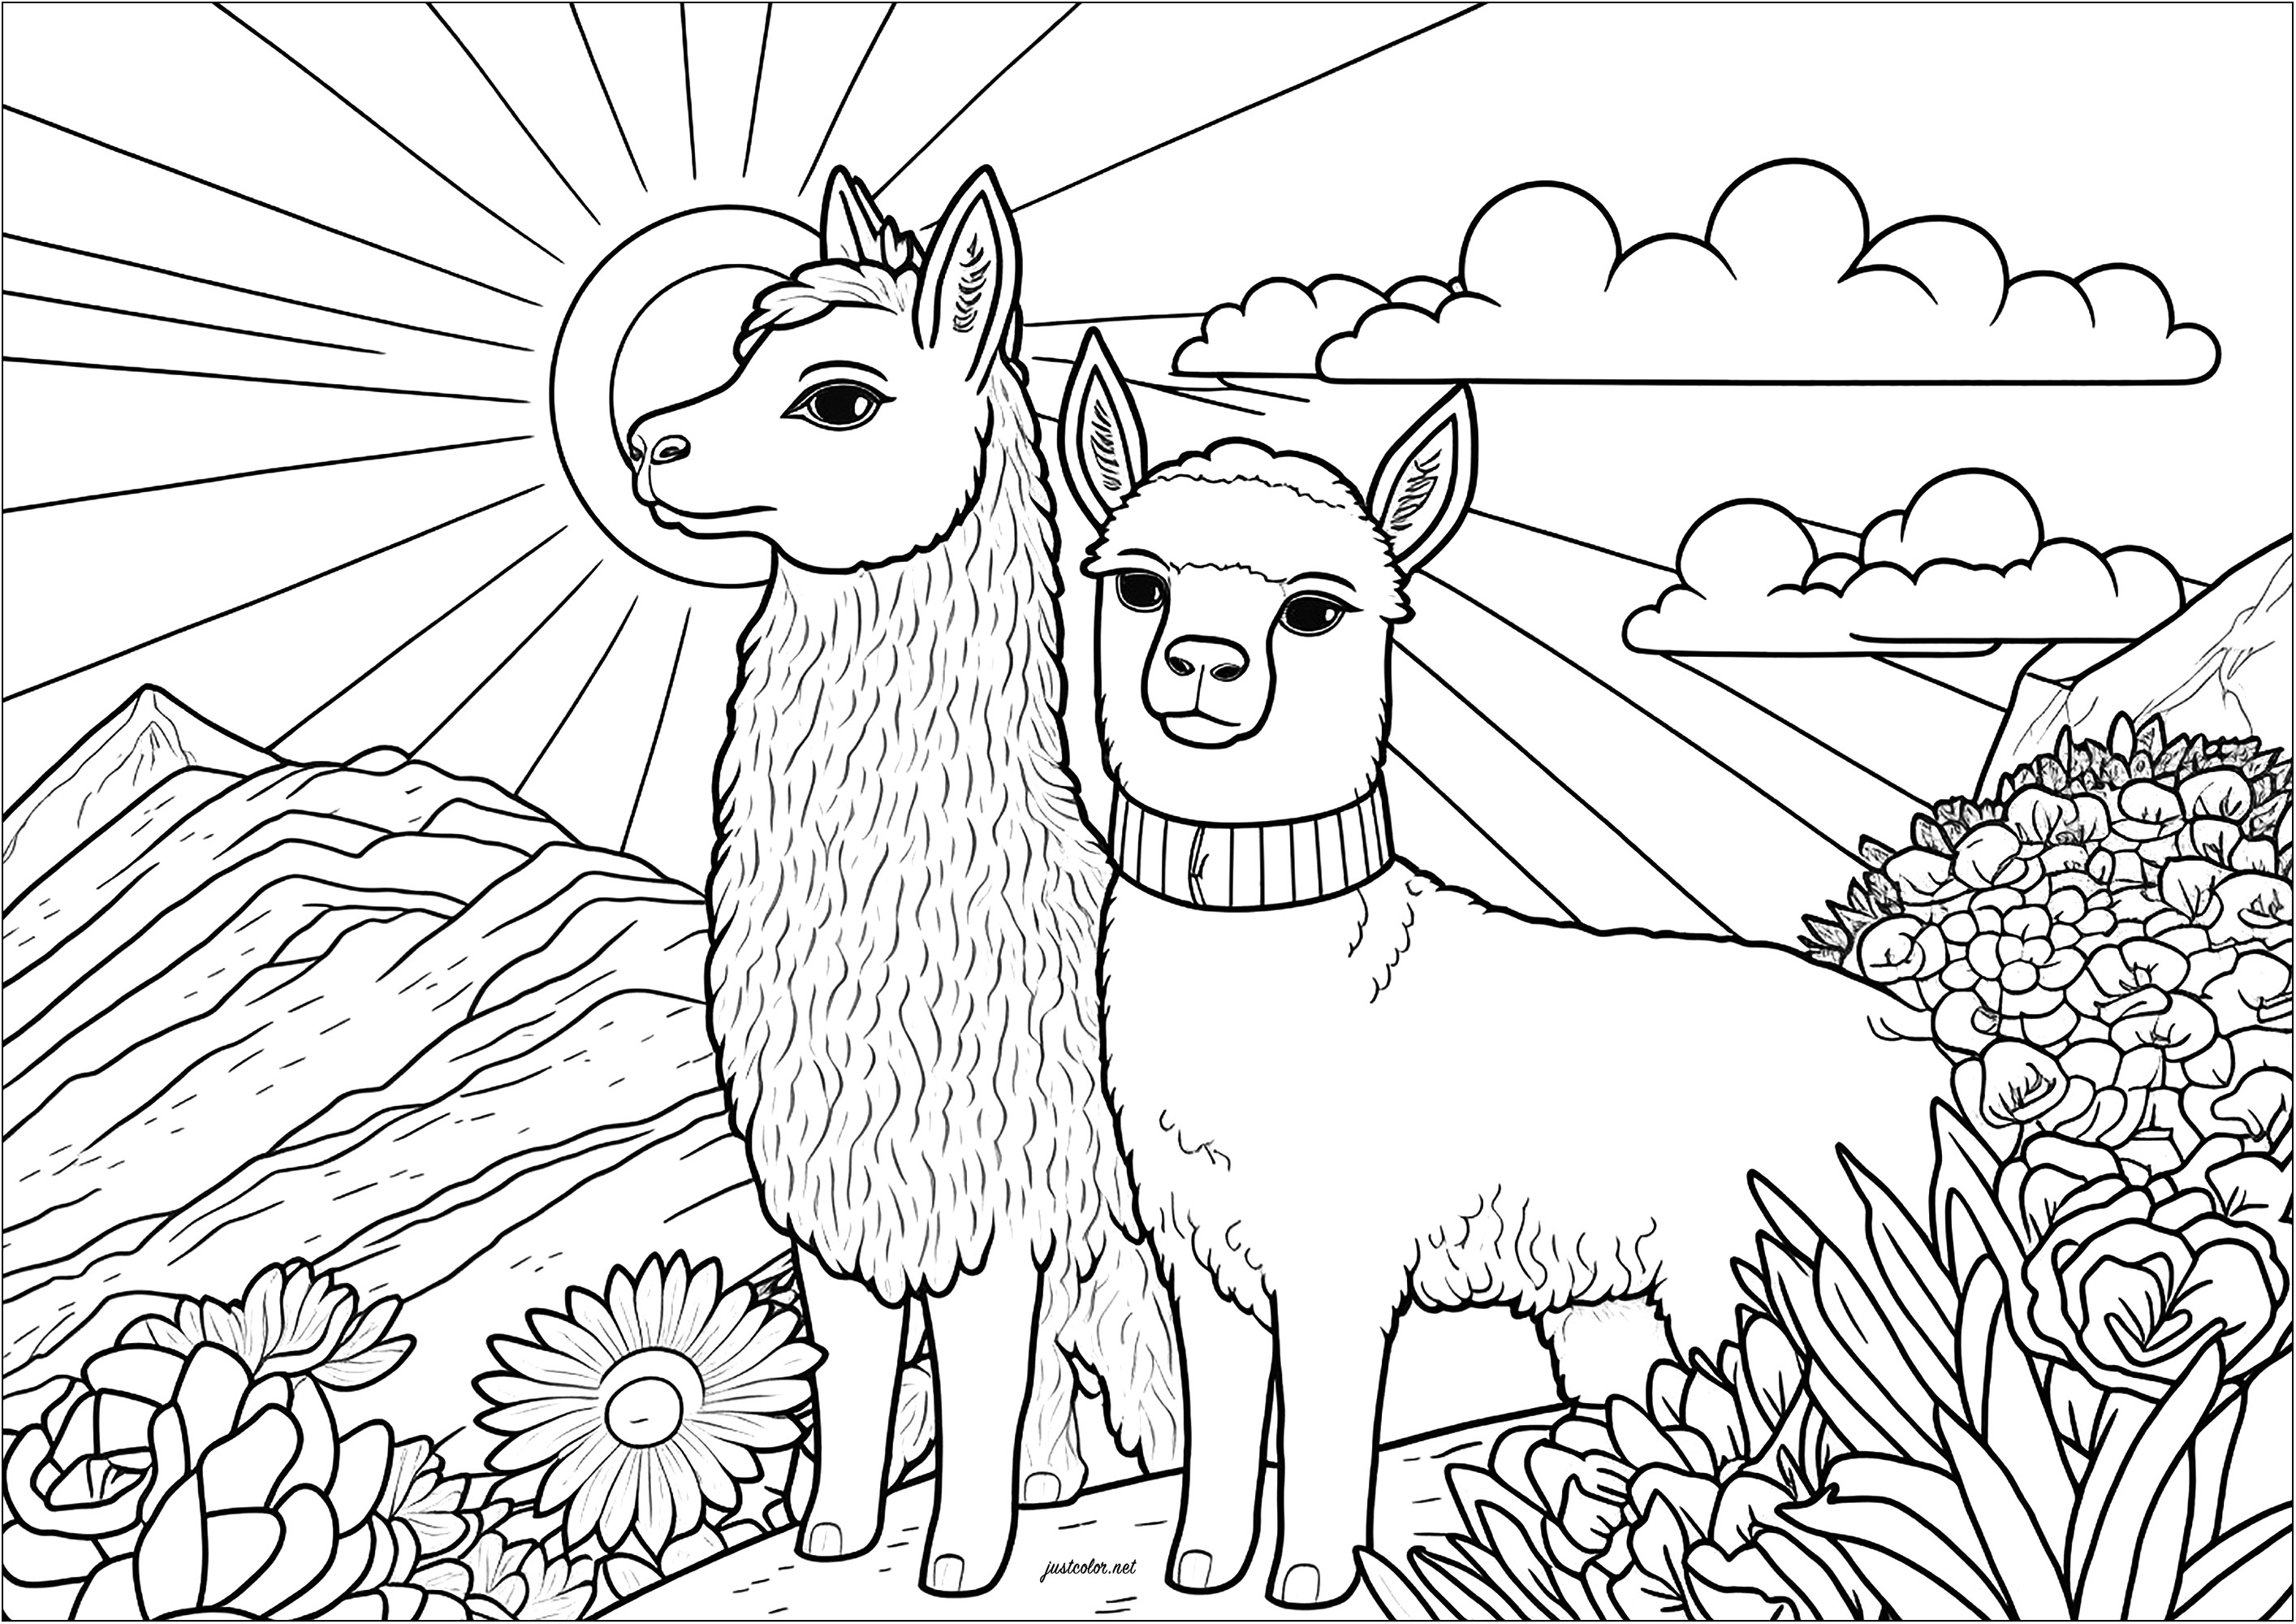 Färbung von zwei ernsthaften Lamas. Auf diesem Gemälde sehen wir zwei ernste Lamas, die nebeneinander stehen.
Sie scheinen aufrecht, aufmerksam und ruhig zu stehen. Man kann sich vorstellen, dass sie die Landschaft um sich herum betrachten und dass sie sich in ihrer Umgebung wohl fühlen.